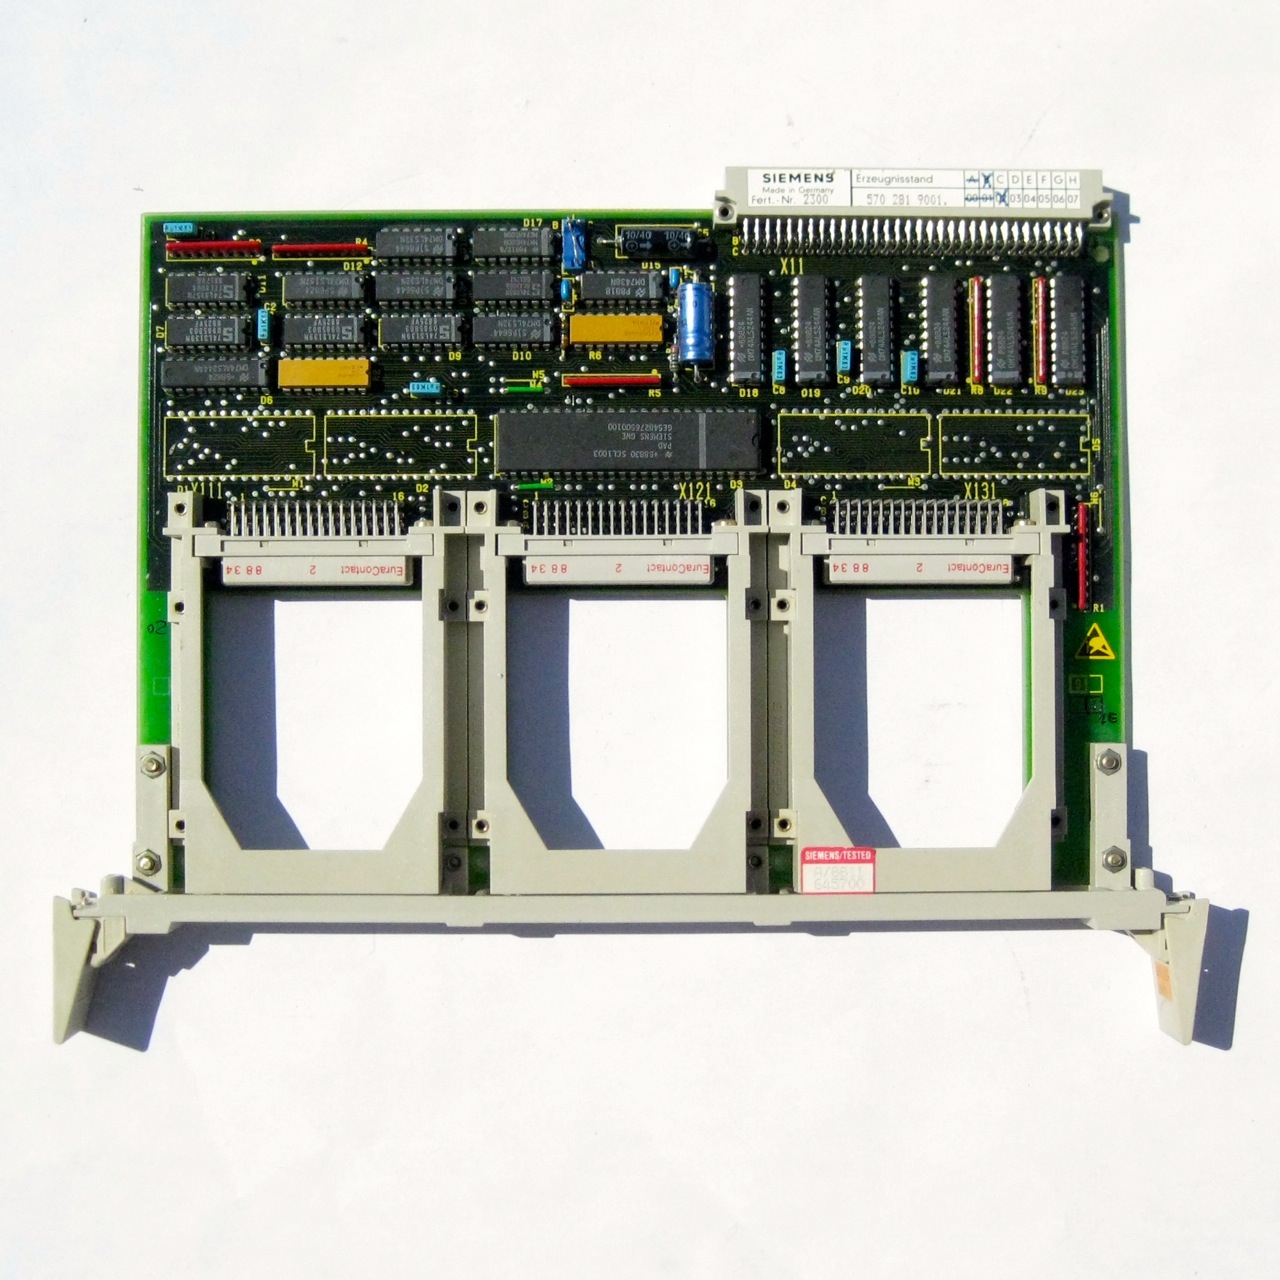 Sectionneur Siemens 2P 32A 2 modules.